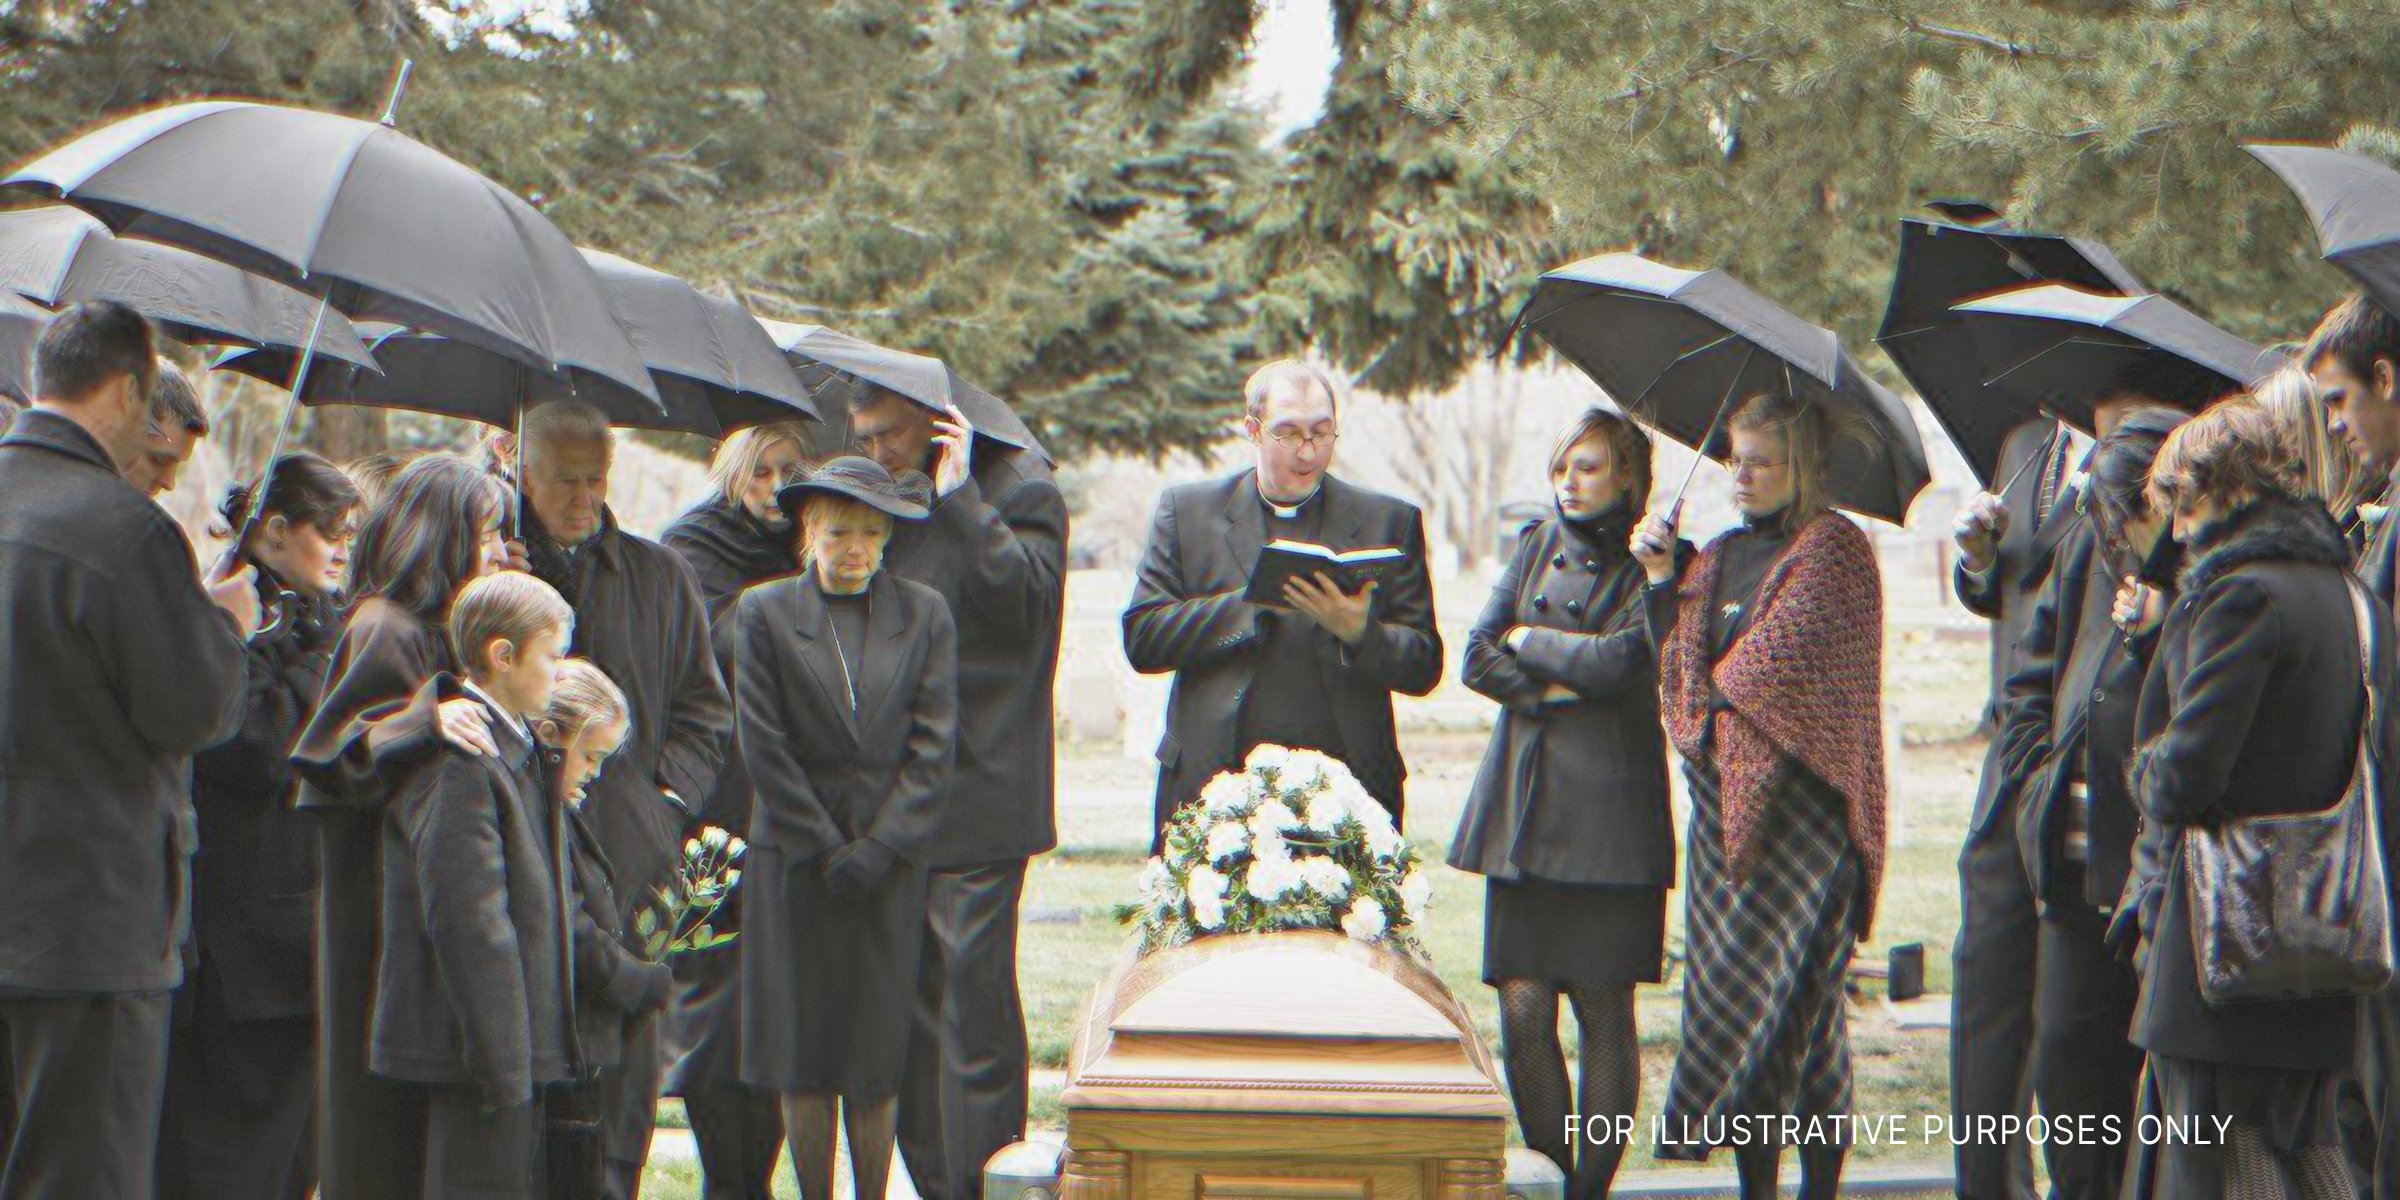 Menschen bei einer Beerdigung | Quelle: Getty Images